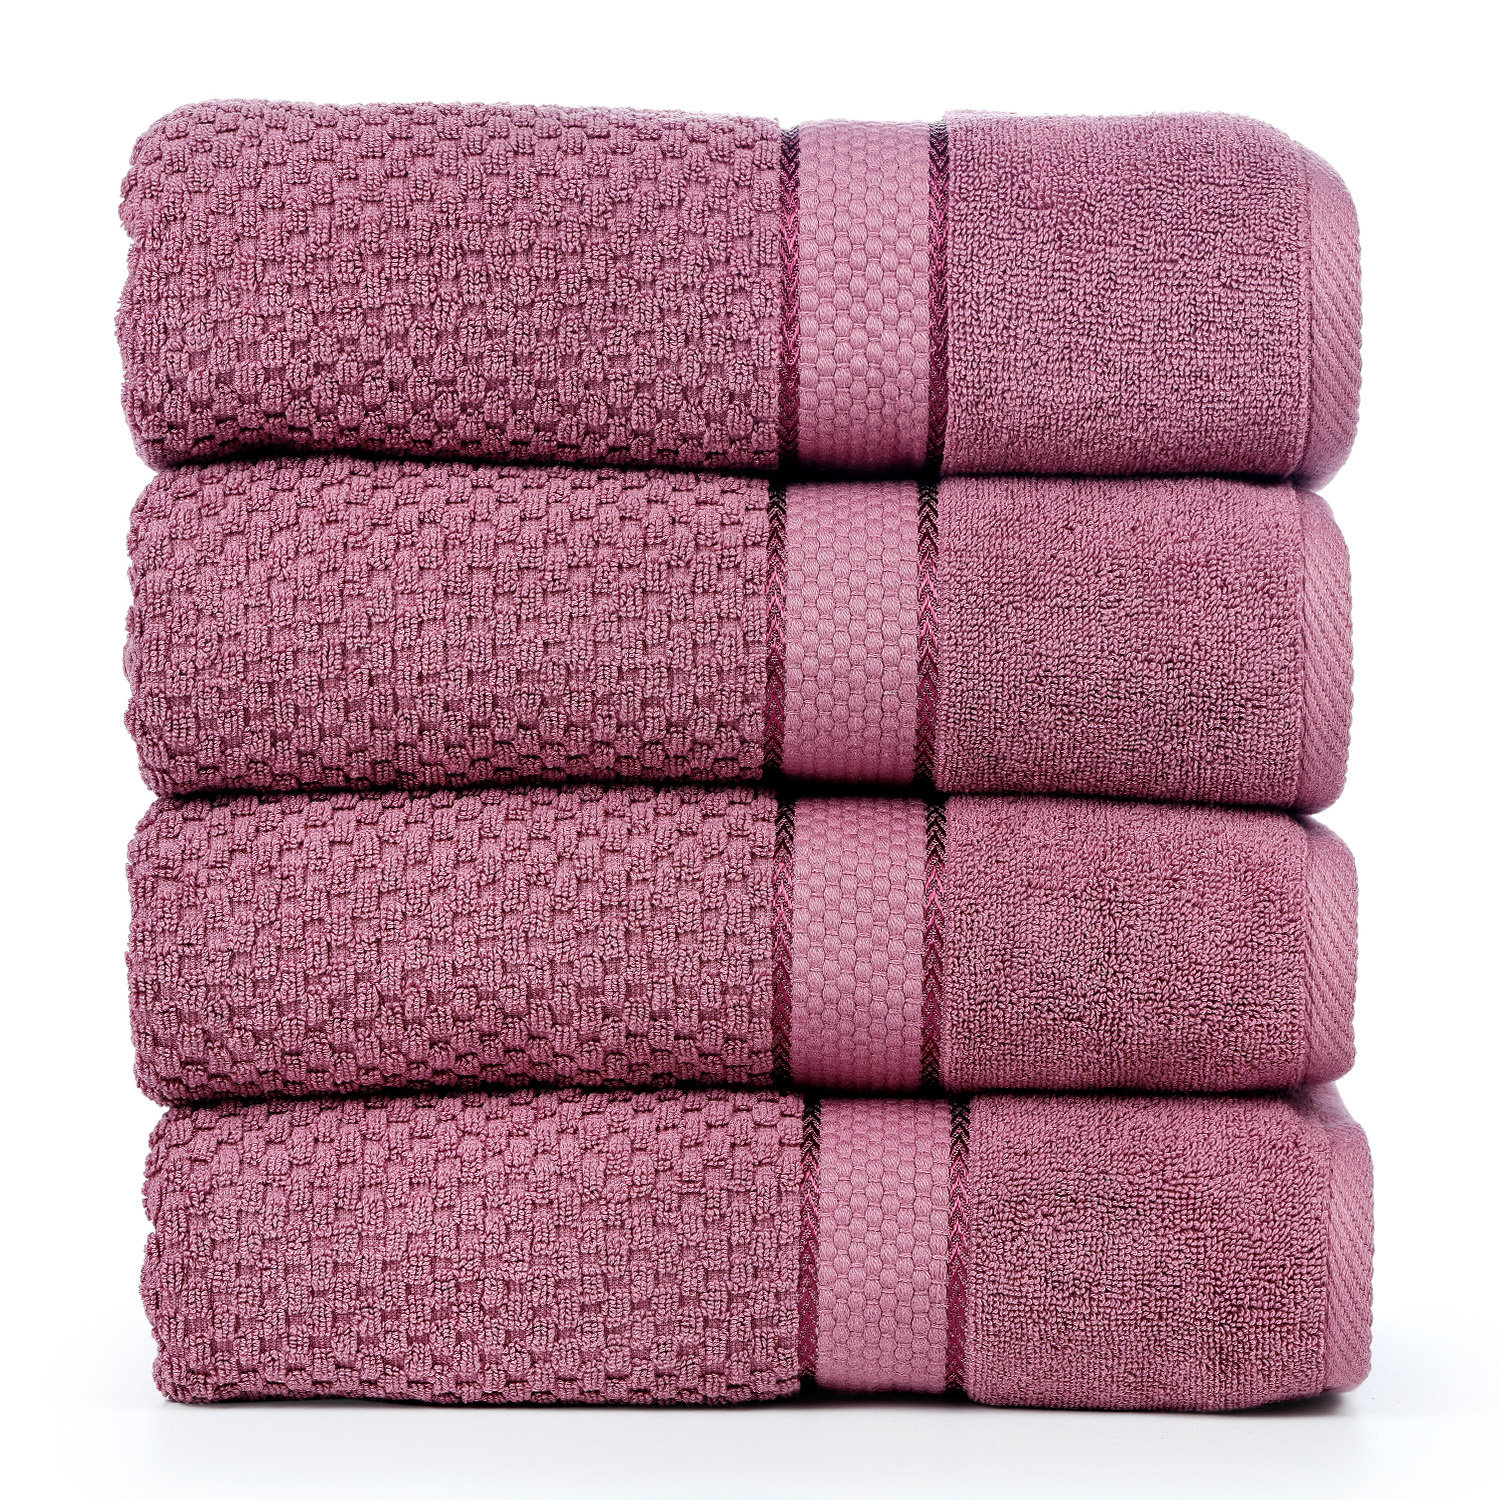 https://assets.wfcdn.com/im/62821003/compr-r85/2515/251512421/mulaayam-4-piece-100-cotton-bath-towel-set.jpg